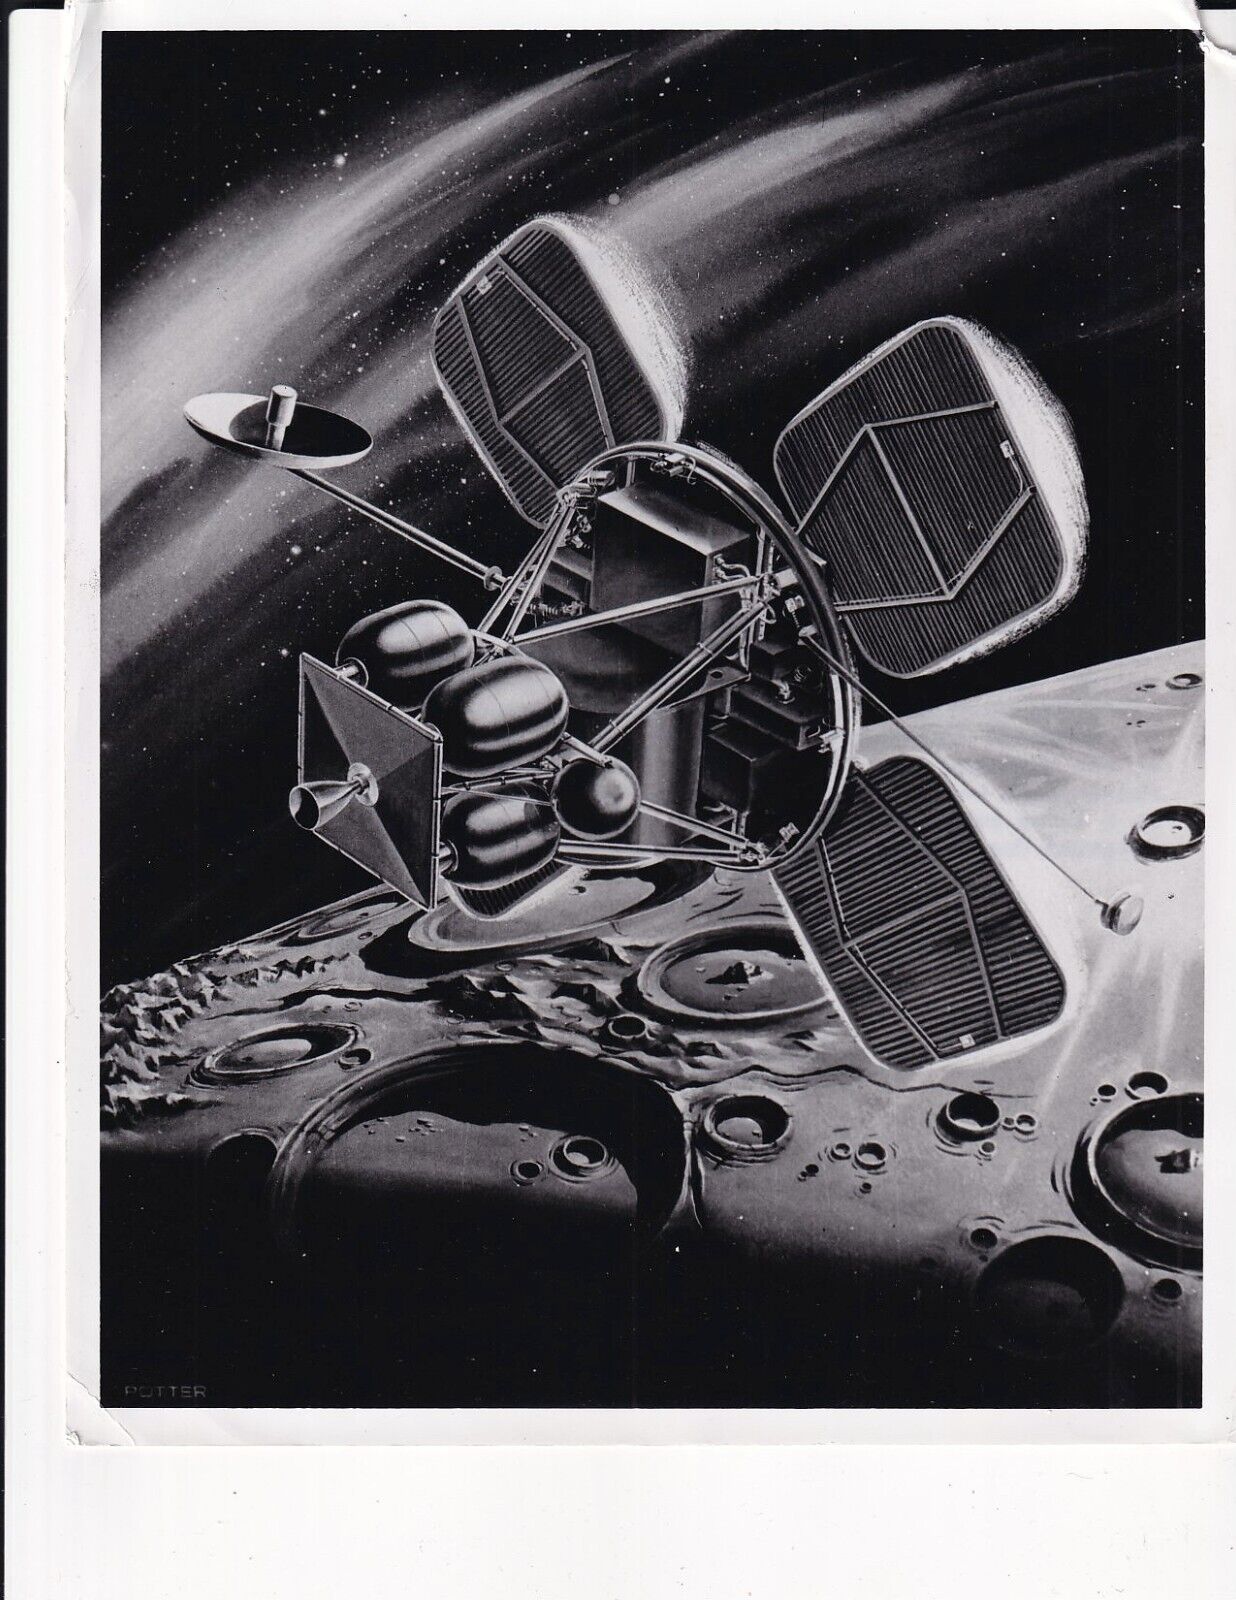 1964 ORIGINAL NASA photo Artist Concept Lunar Orbiter Spacecraft